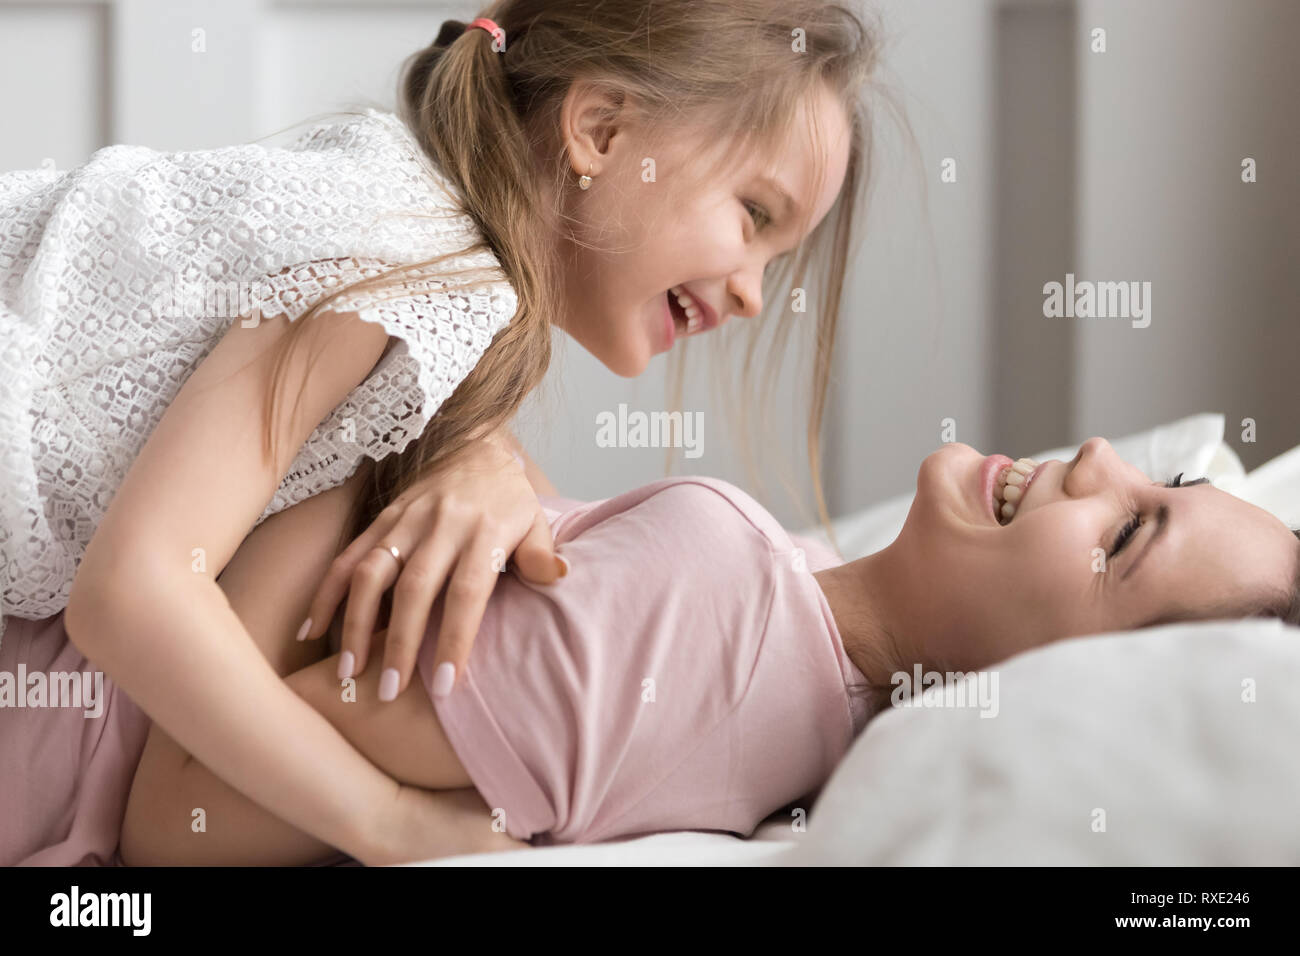 Glückliches Kind und Mutter Spaß Lachen spielen im Bett Stockfoto